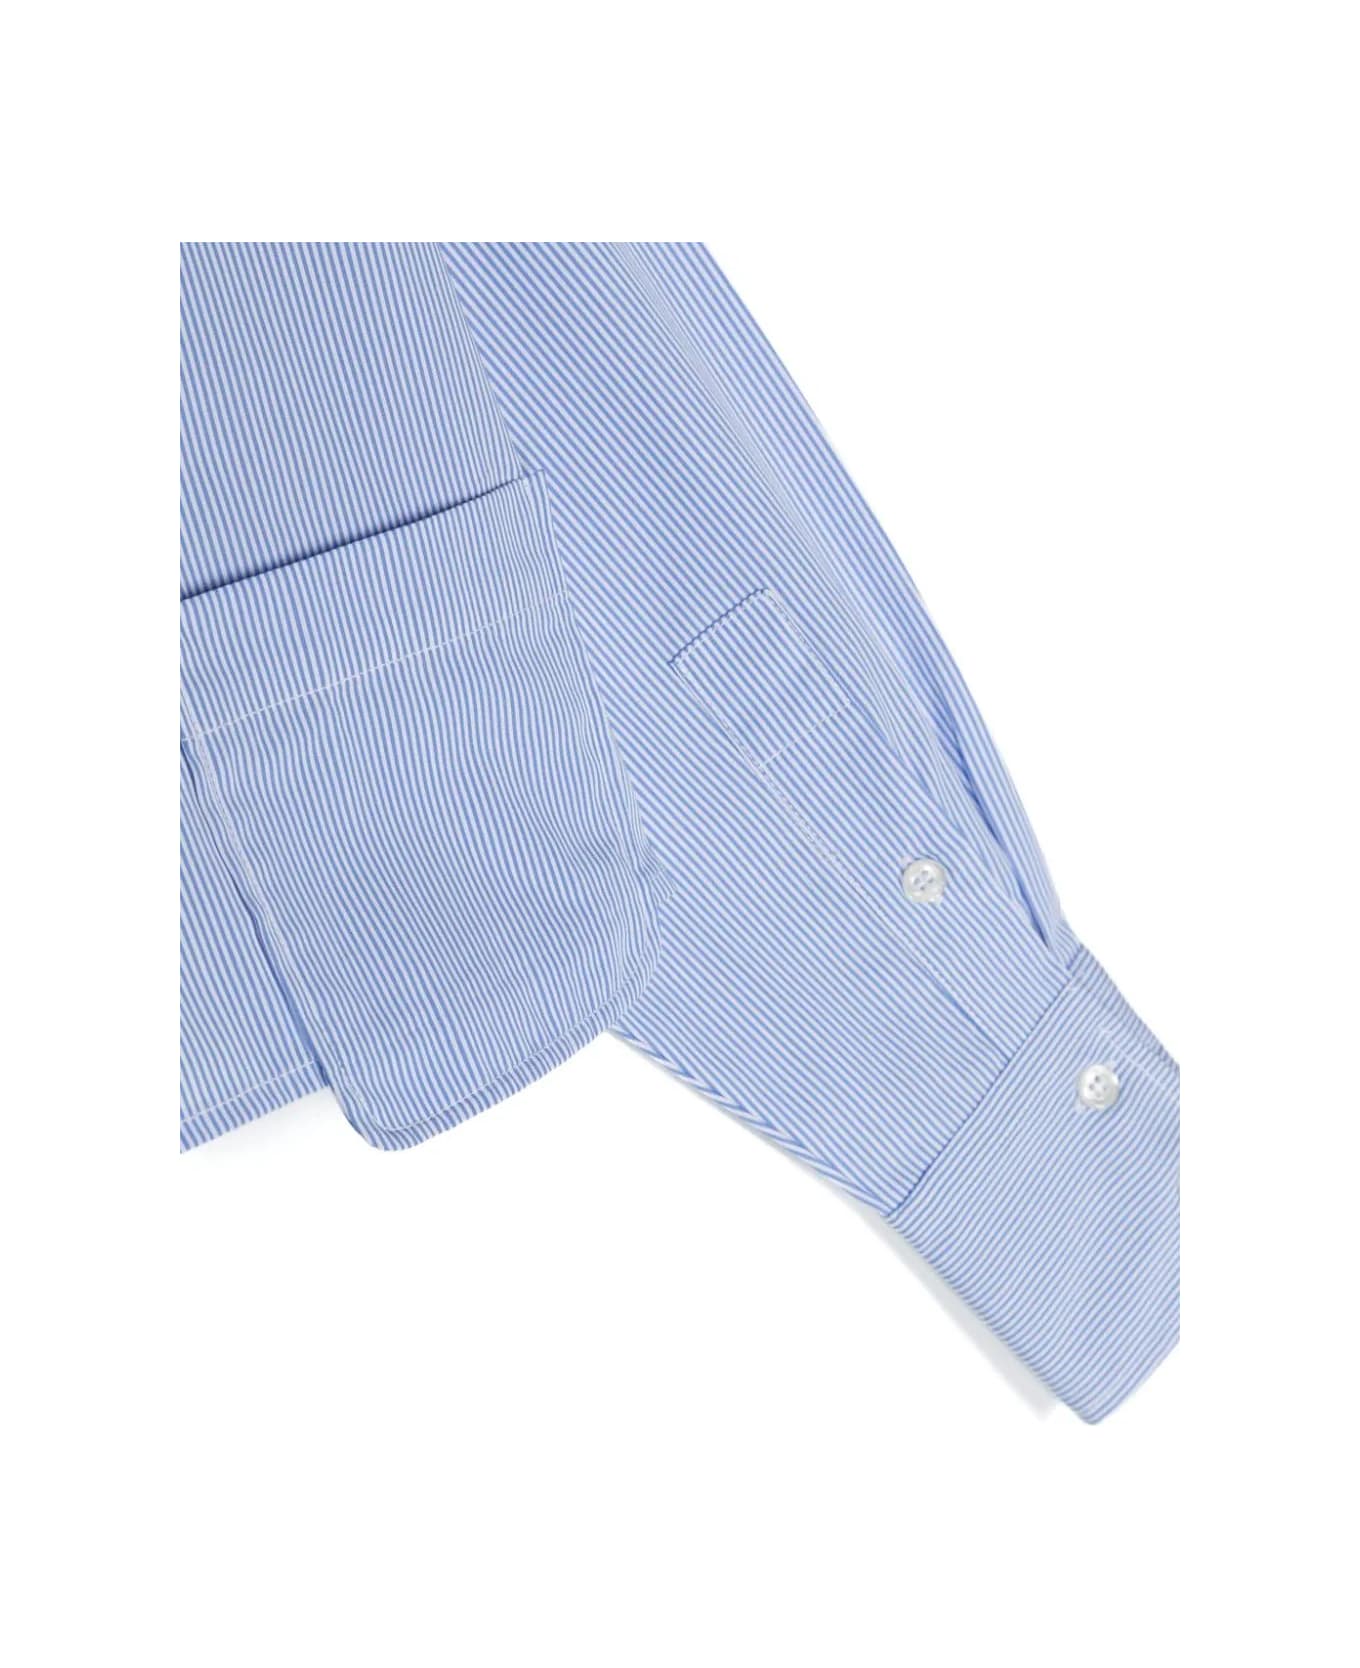 Aspesi Striped Crop Shirt - Light blue シャツ